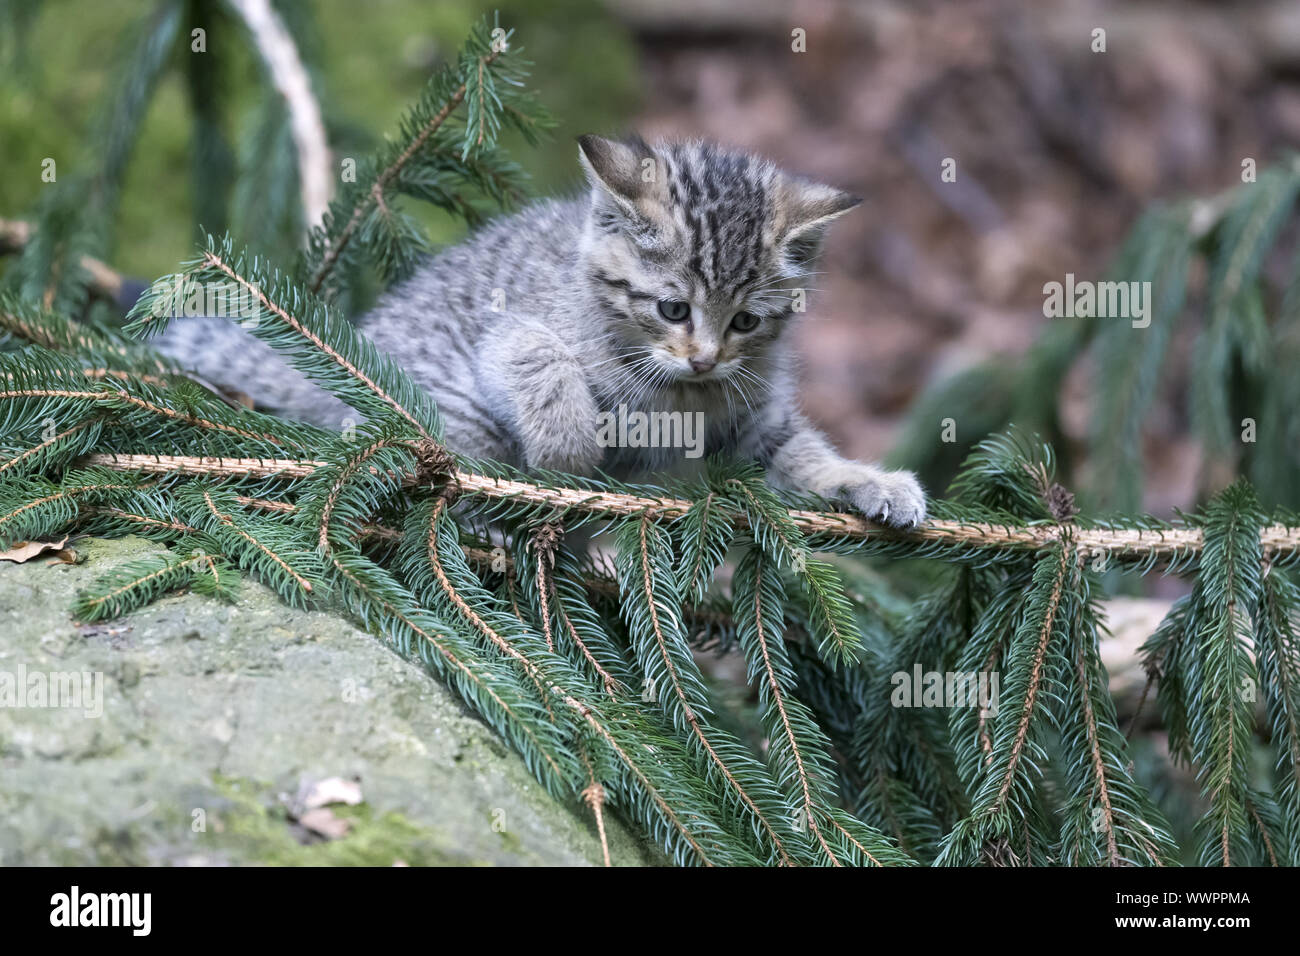 Wildcat, comune gatto selvatico Foto Stock